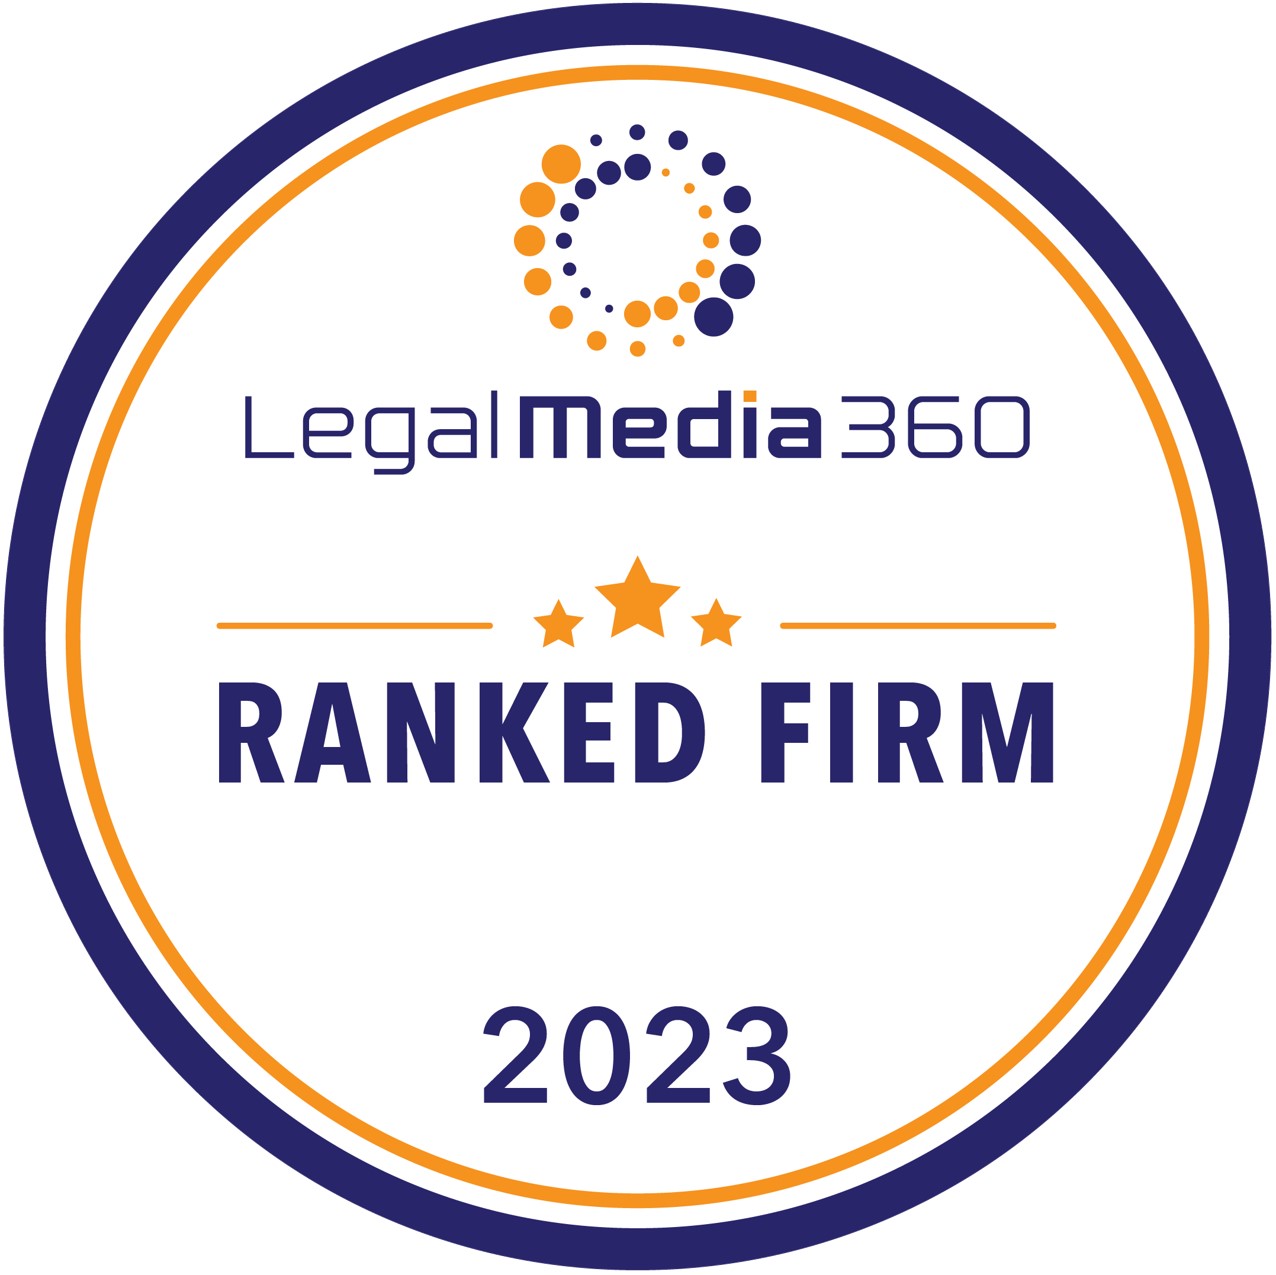 林朱律师事务所荣获《法律媒体 360》(Legal Media 360) 评为2023年度备受注目香港律所